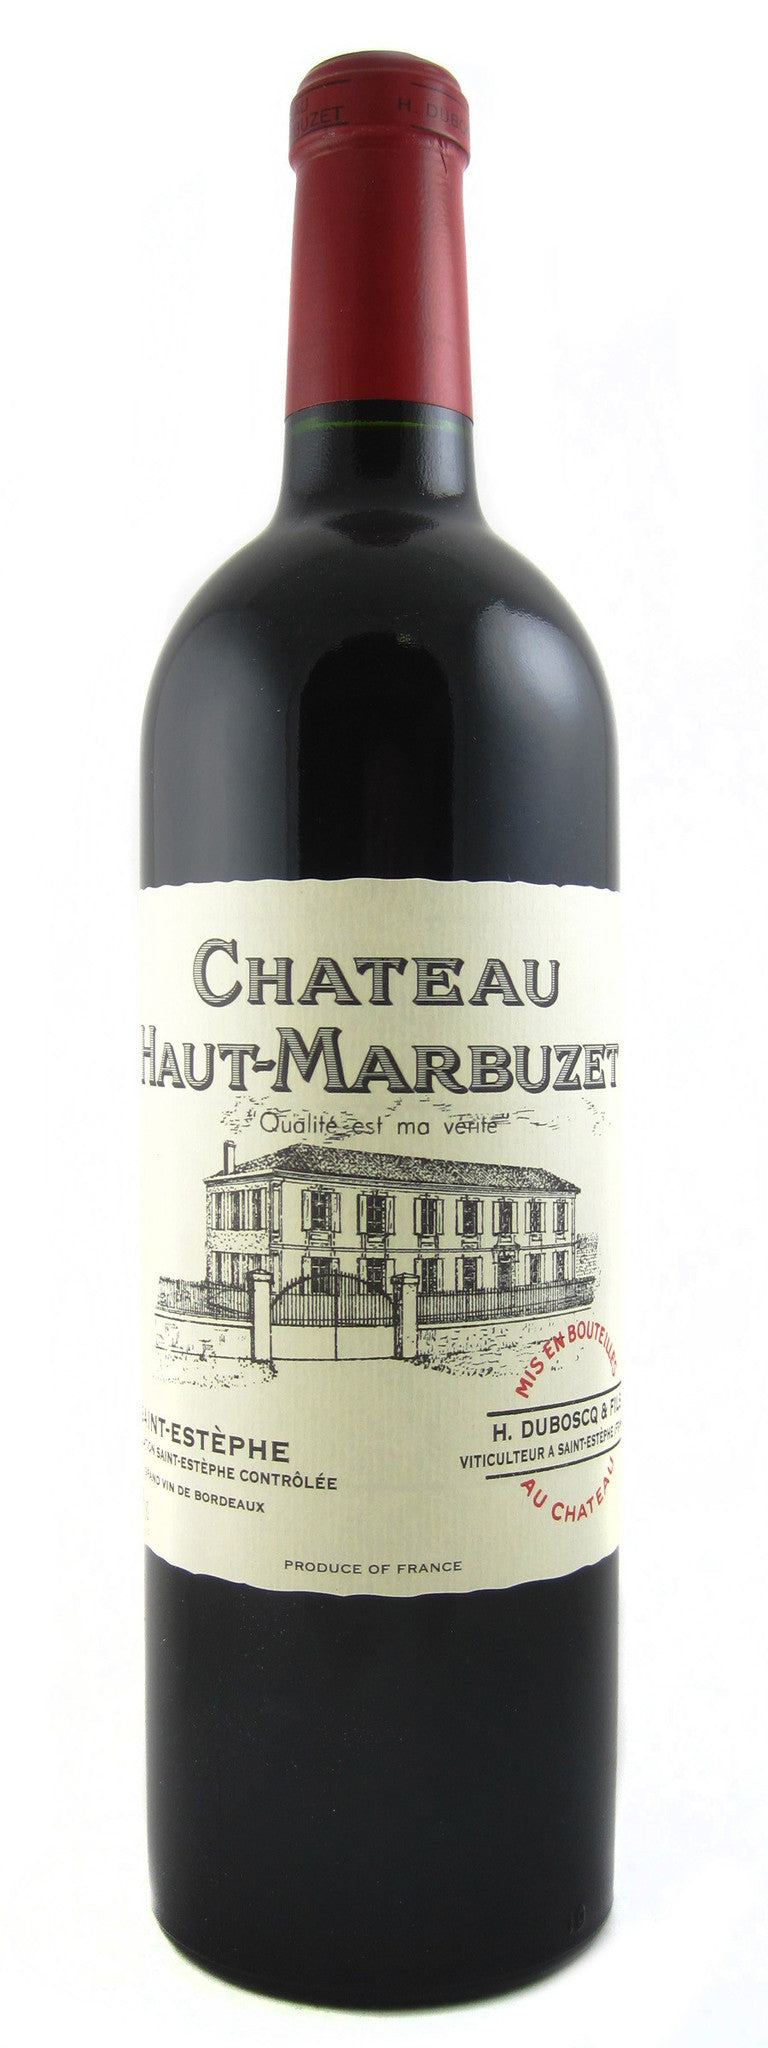 Chateau Haut Marbuzet, 300 cl "Double Magnum", 2012